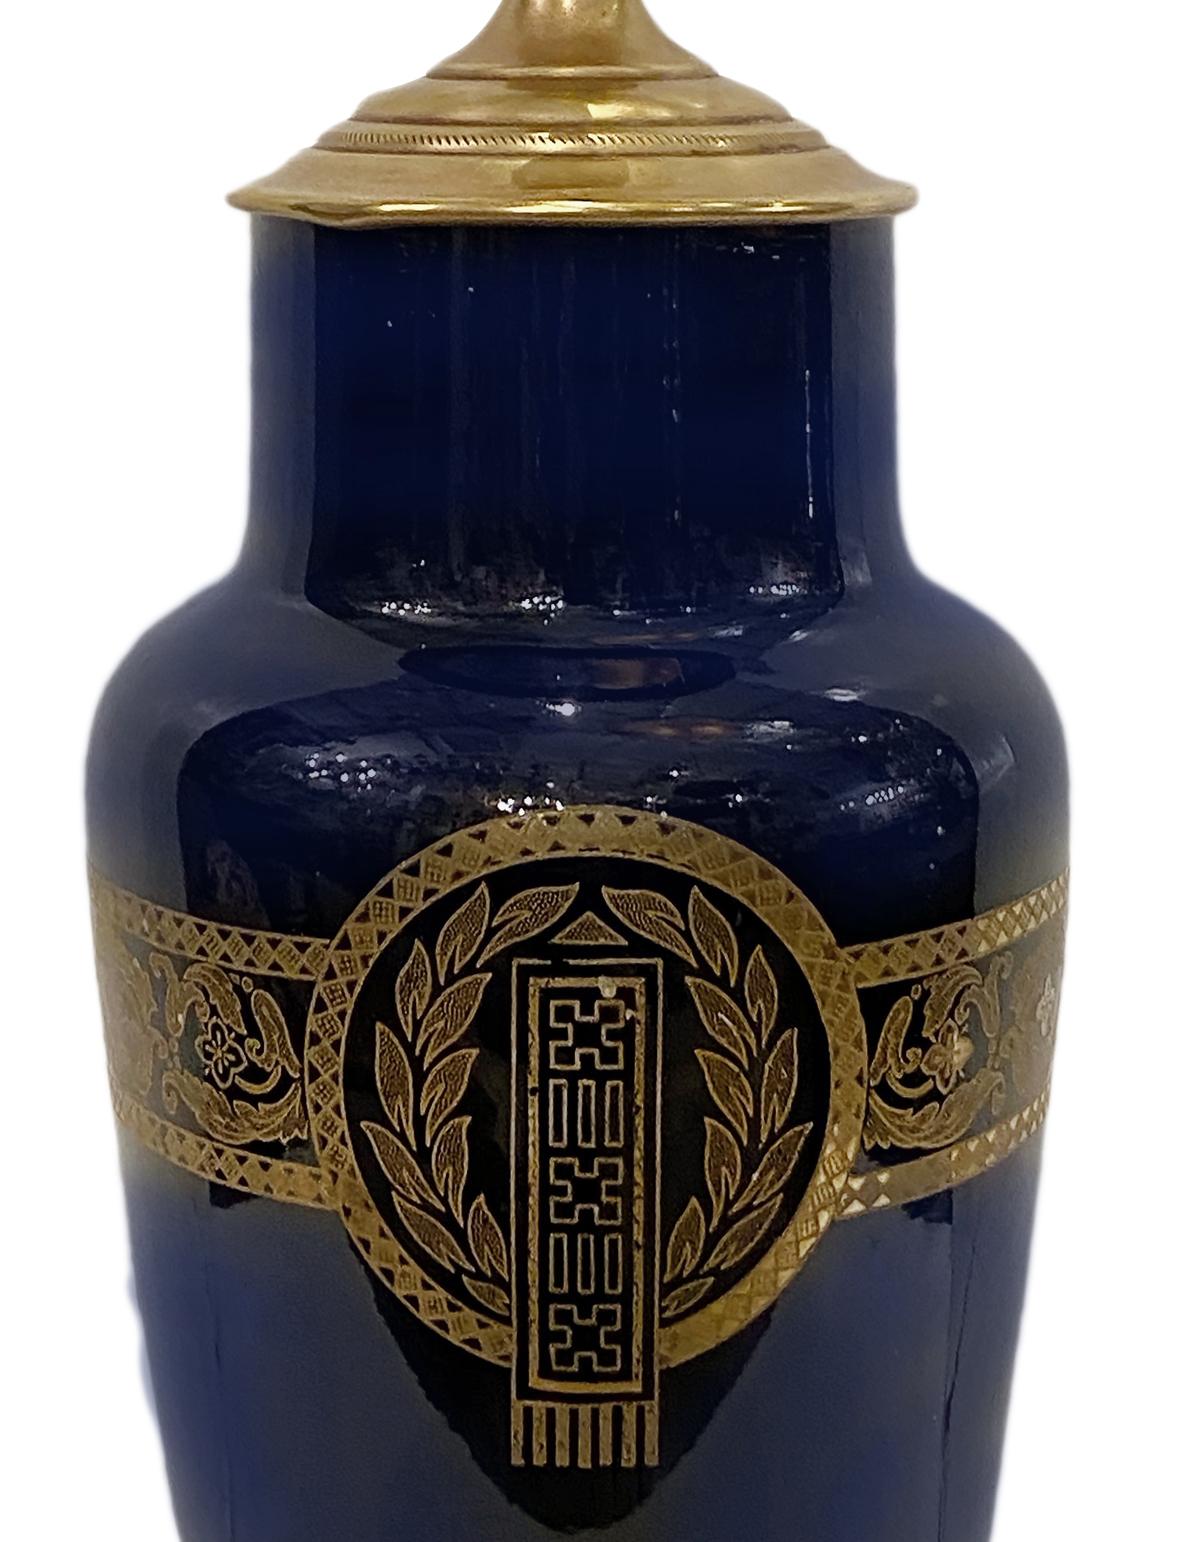 Lampe de table en porcelaine bleu cobalt, datant des années 1900, avec détails peints à l'or et base en bronze et étain.

Mesures :
Hauteur du corps : 13,5